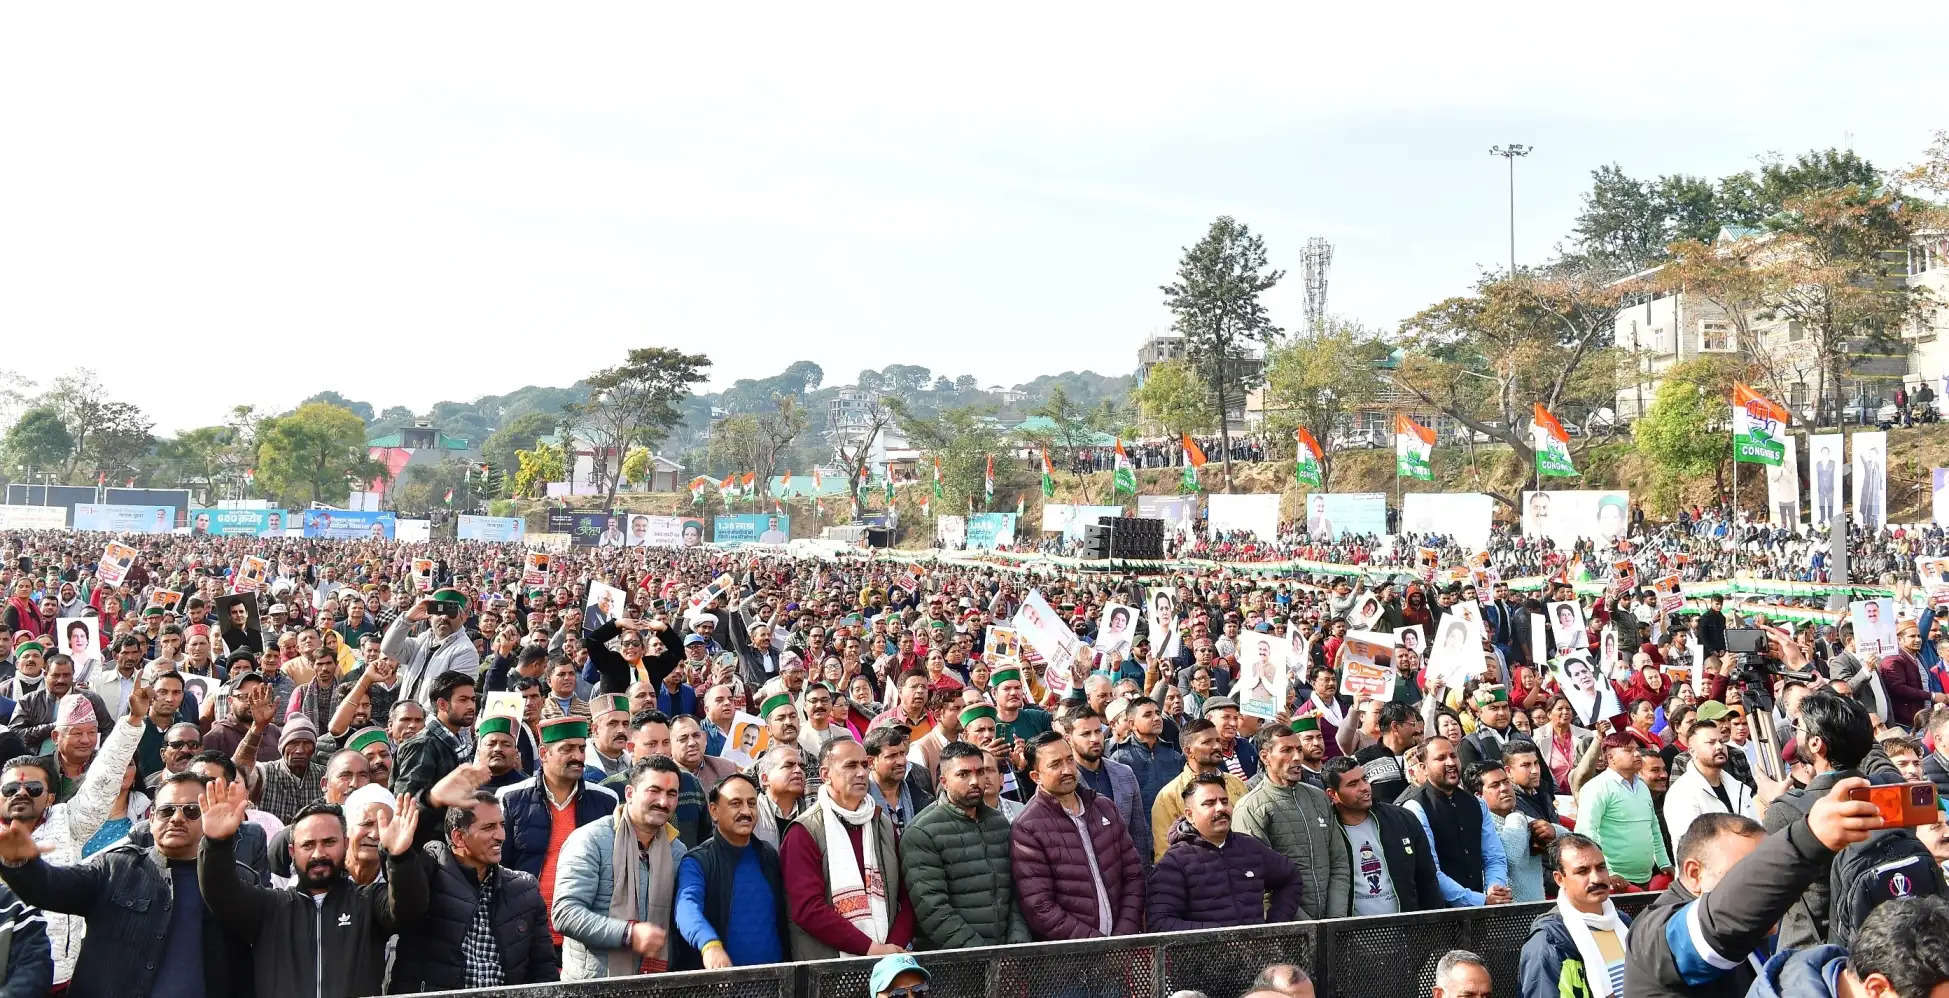 सत्ता में आने से पहले दस गारंटियों का वादा करने वाली कांग्रेस की सरकार ने हिमाचल प्रदेश सोमवार 11 दिसंबर को एक साल का कार्यकाल पूरा करन लिया। सुखविंद्र सिंह सुक्खू सरकार ने सोमवार को एक साल का कार्यकाल पूरा होने का धर्मशाला में जश्न मनाया। इस दौरान मुख्यमंत्री सुखविंद्र सिंह सुक्खू ने गारंटियों को पूरा करने की दिशा में मंच से चार बड़ी घोषणाएं कीं।    मुख्यमंत्री सुखविंद्र सिंह सुक्खू ने कहा कि लाहौल-स्पीति की 18 साल से ऊपर की सभी महिलाओं को 1500-1500 रुपये मासिक पेंशन दी जाएगी। इसी तरह प्रदेश की 2.37 लाख महिलाओं को भी अगले वर्ष से 1100 के स्थान पर 1500 रुपये पेंशन दी जाएगी। 